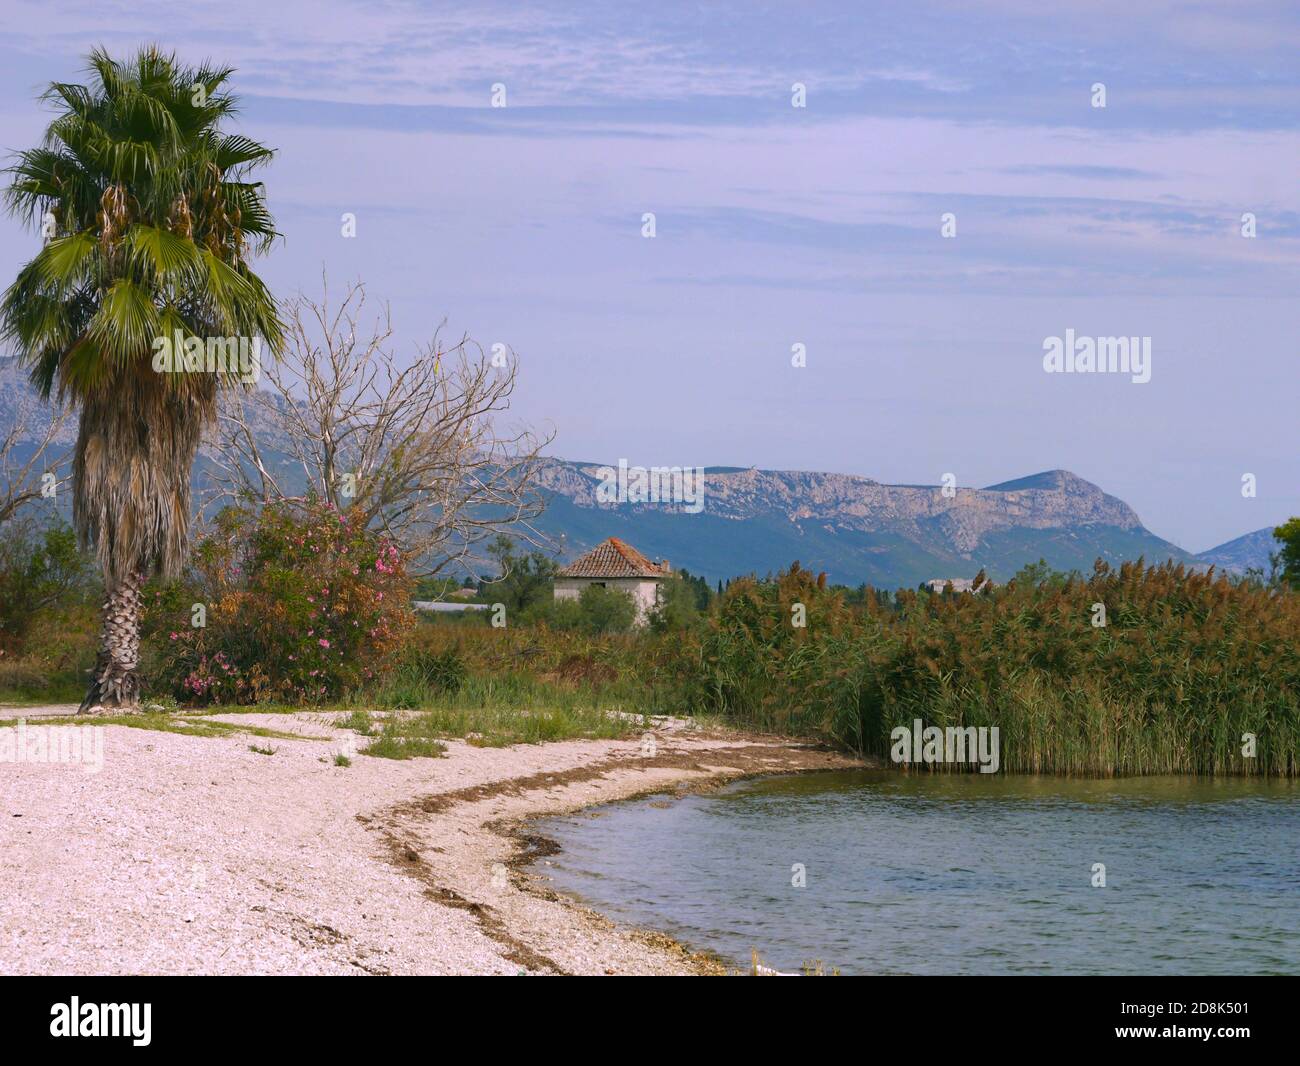 Empty Beach in Trogir, Croatia Stock Photo